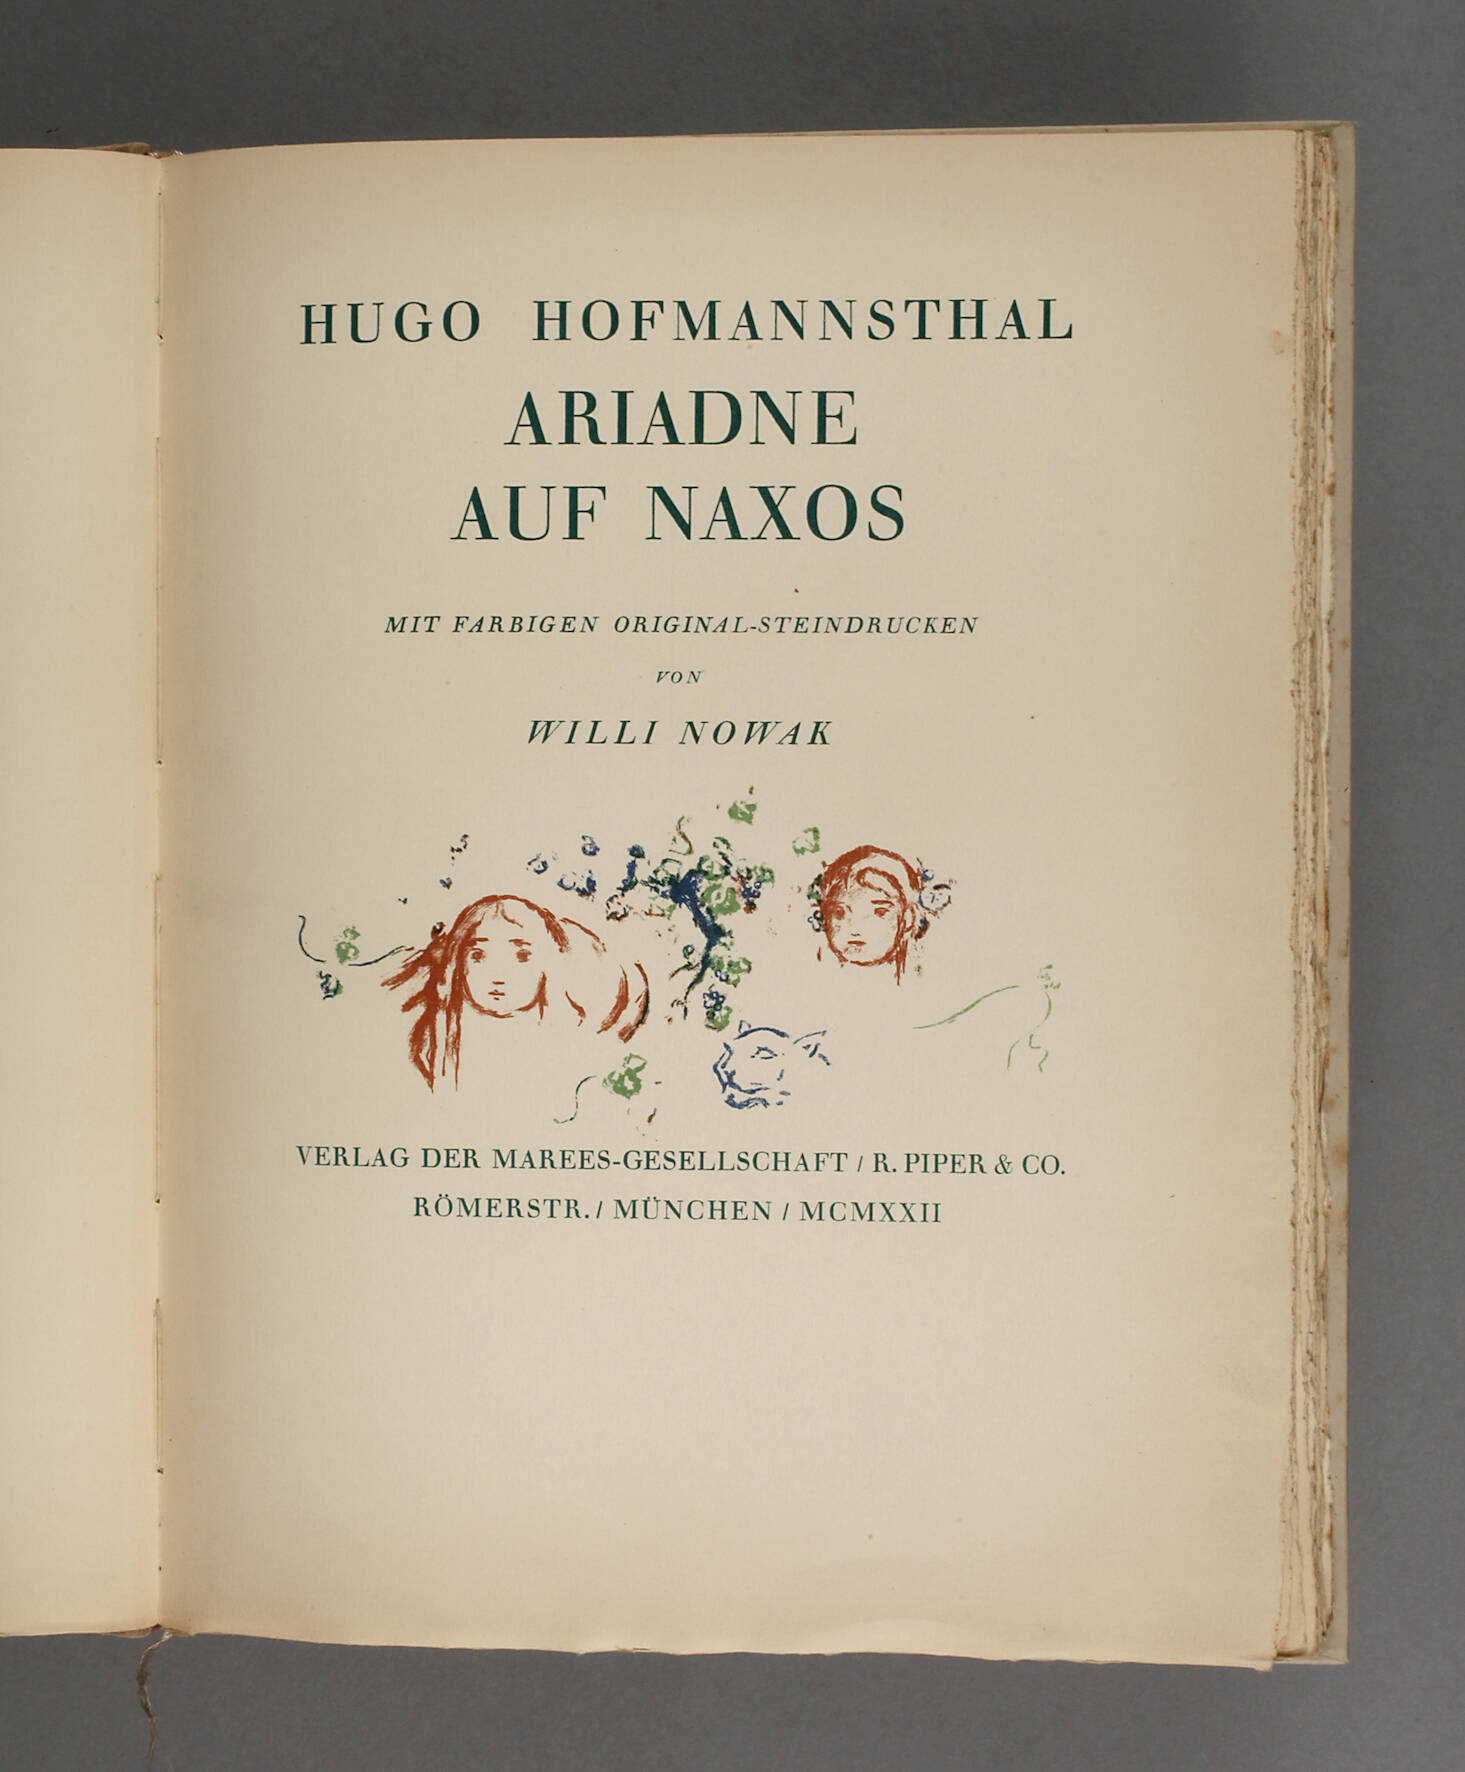 Hugo Hofmannsthal – Ariadne auf Naxos